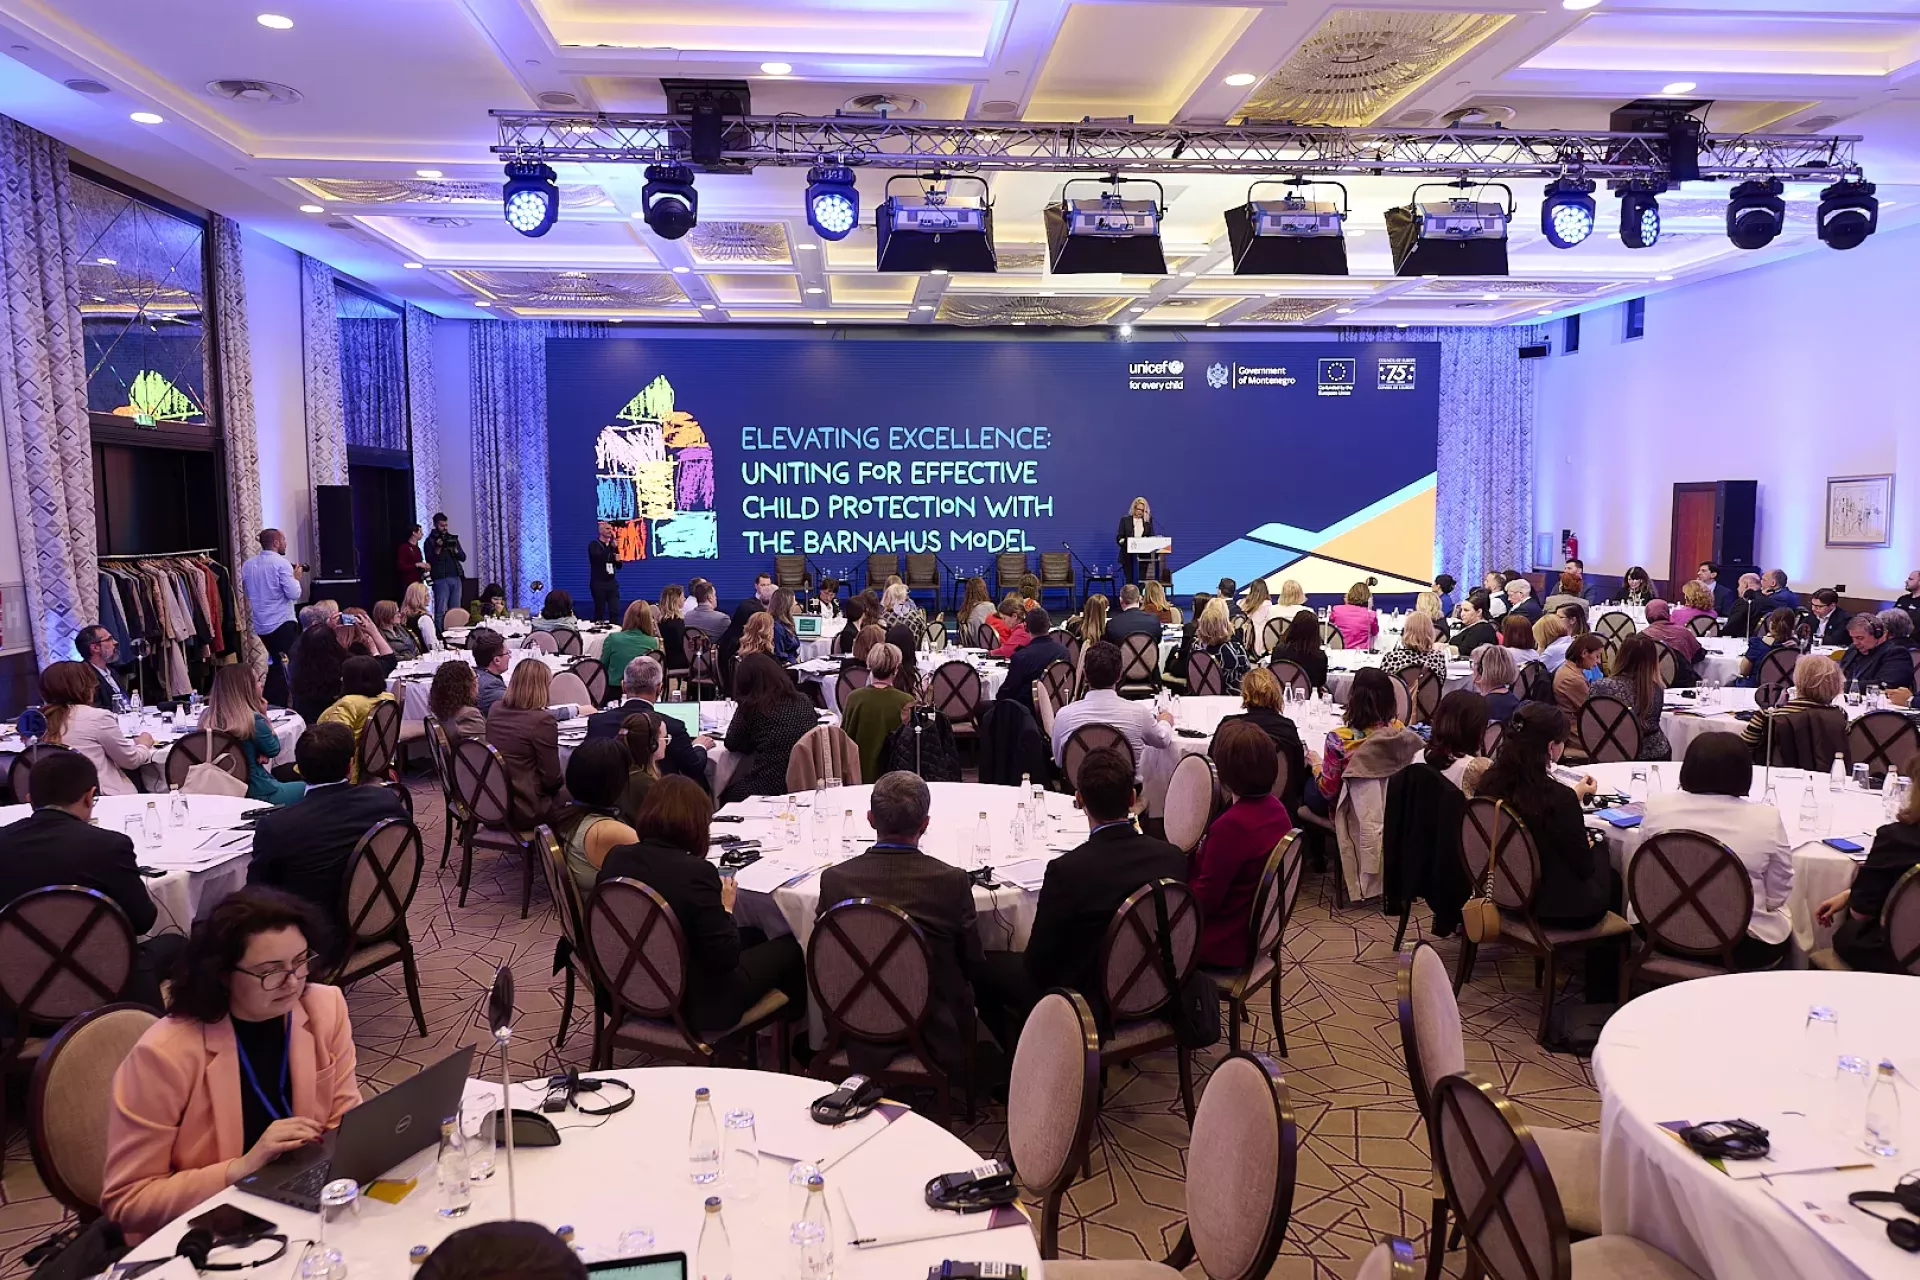 Regionalna konferencija „Na putu ka izvrsnosti: Udruženi ka djelotvornoj dječjoj zaštiti s modelom Barnahus“